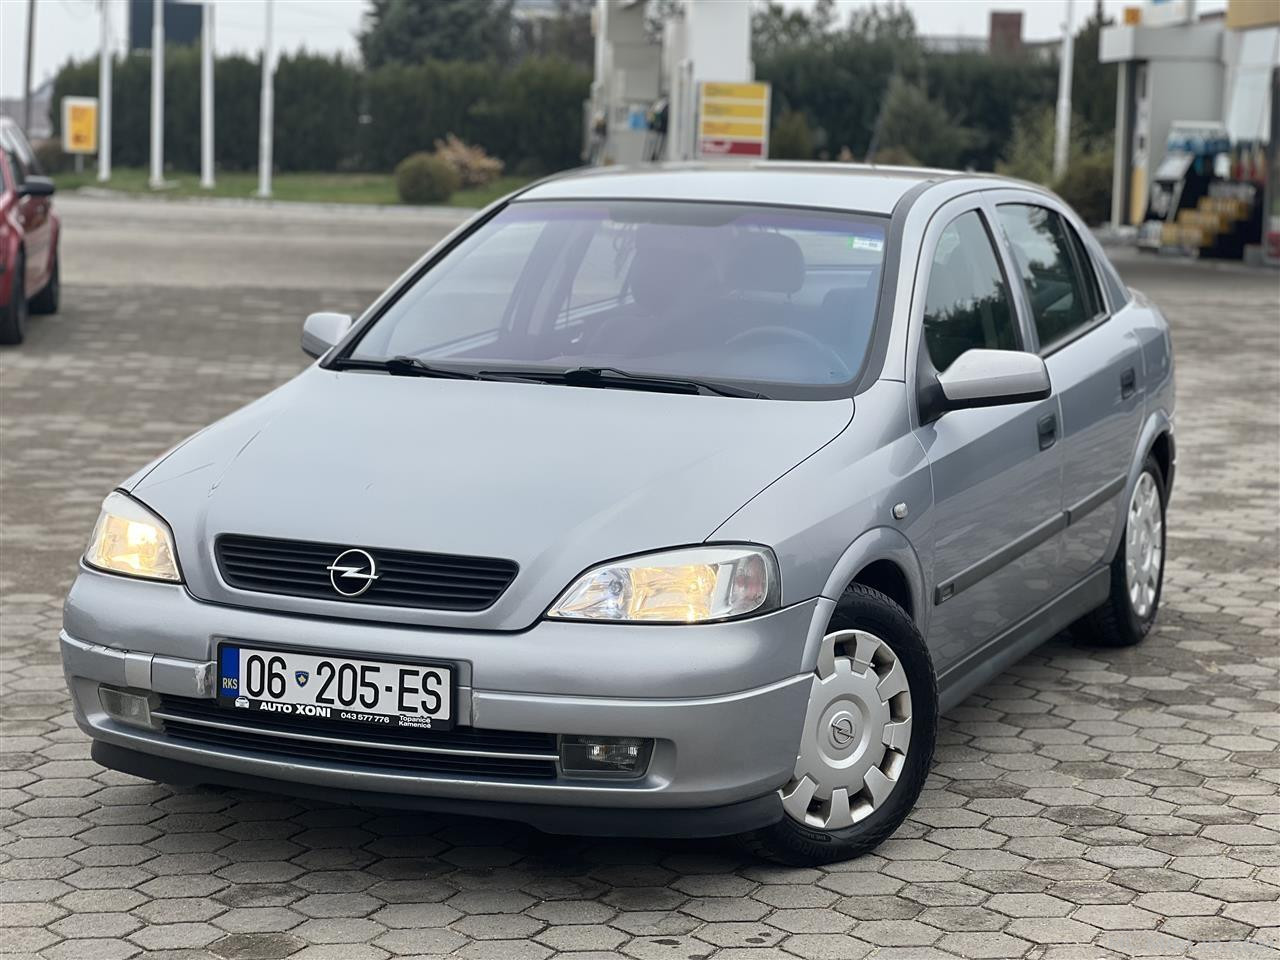 Opel Astra G 1.6 Benzin Plin V.p2001 Rks 8 Muj 